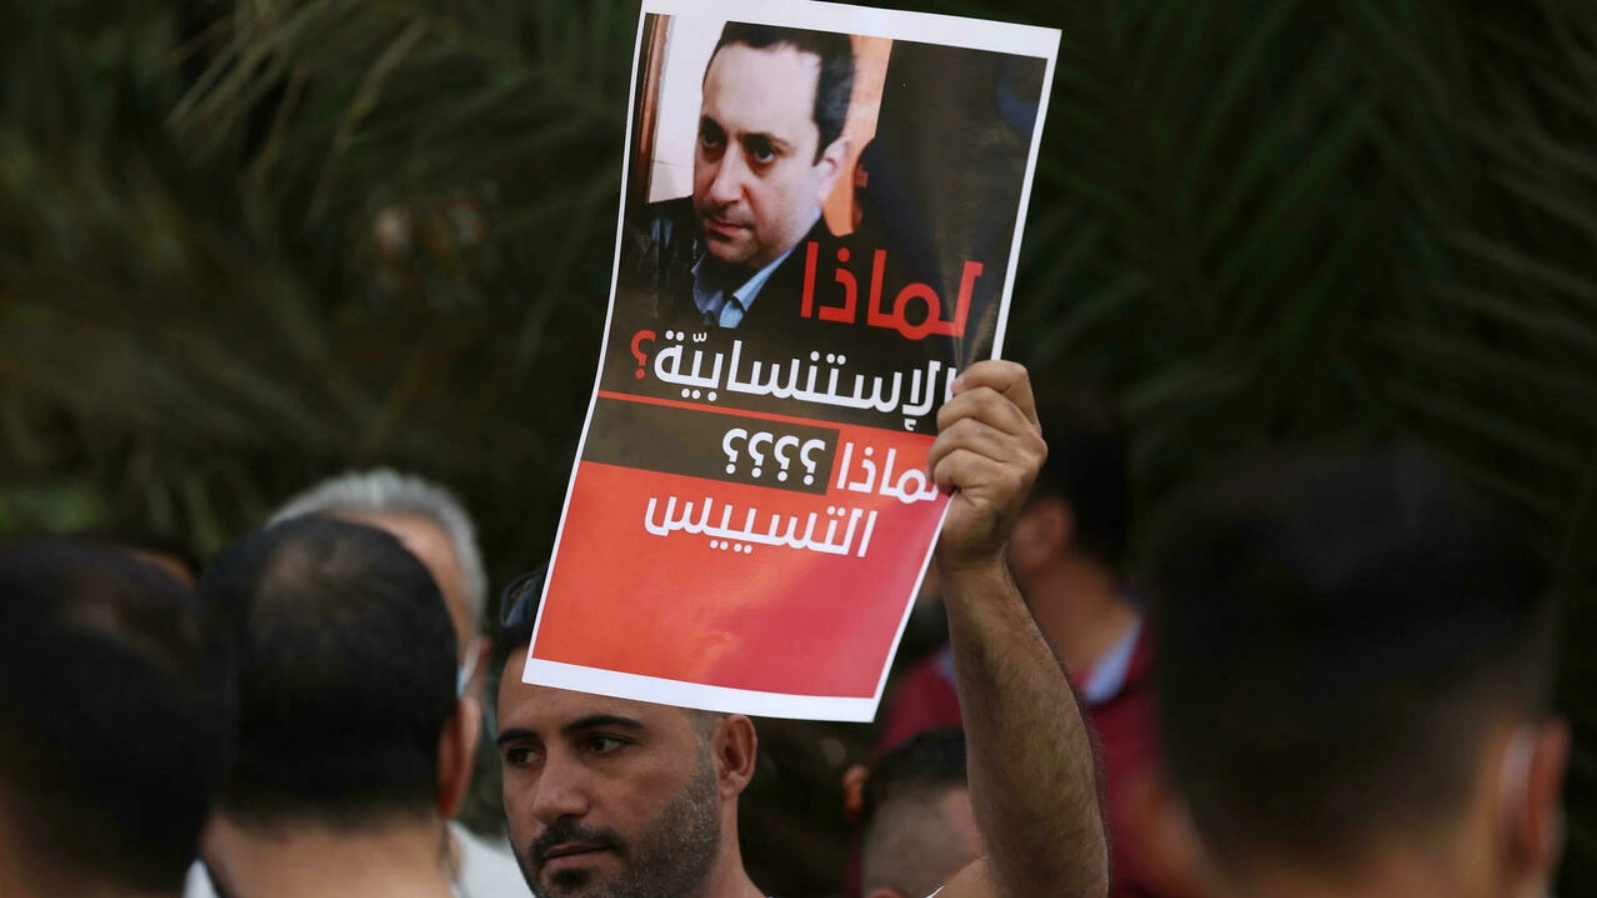 لافتة تحمل صورة القاضي طارق بيطار المحقق العدلي في انفجار مرفأ بيروت، يرفعها متظاهر معارض للقاضي في العاصمة اللبنانية بتاريخ 14 تشرين الأول/أكتوبر 2021